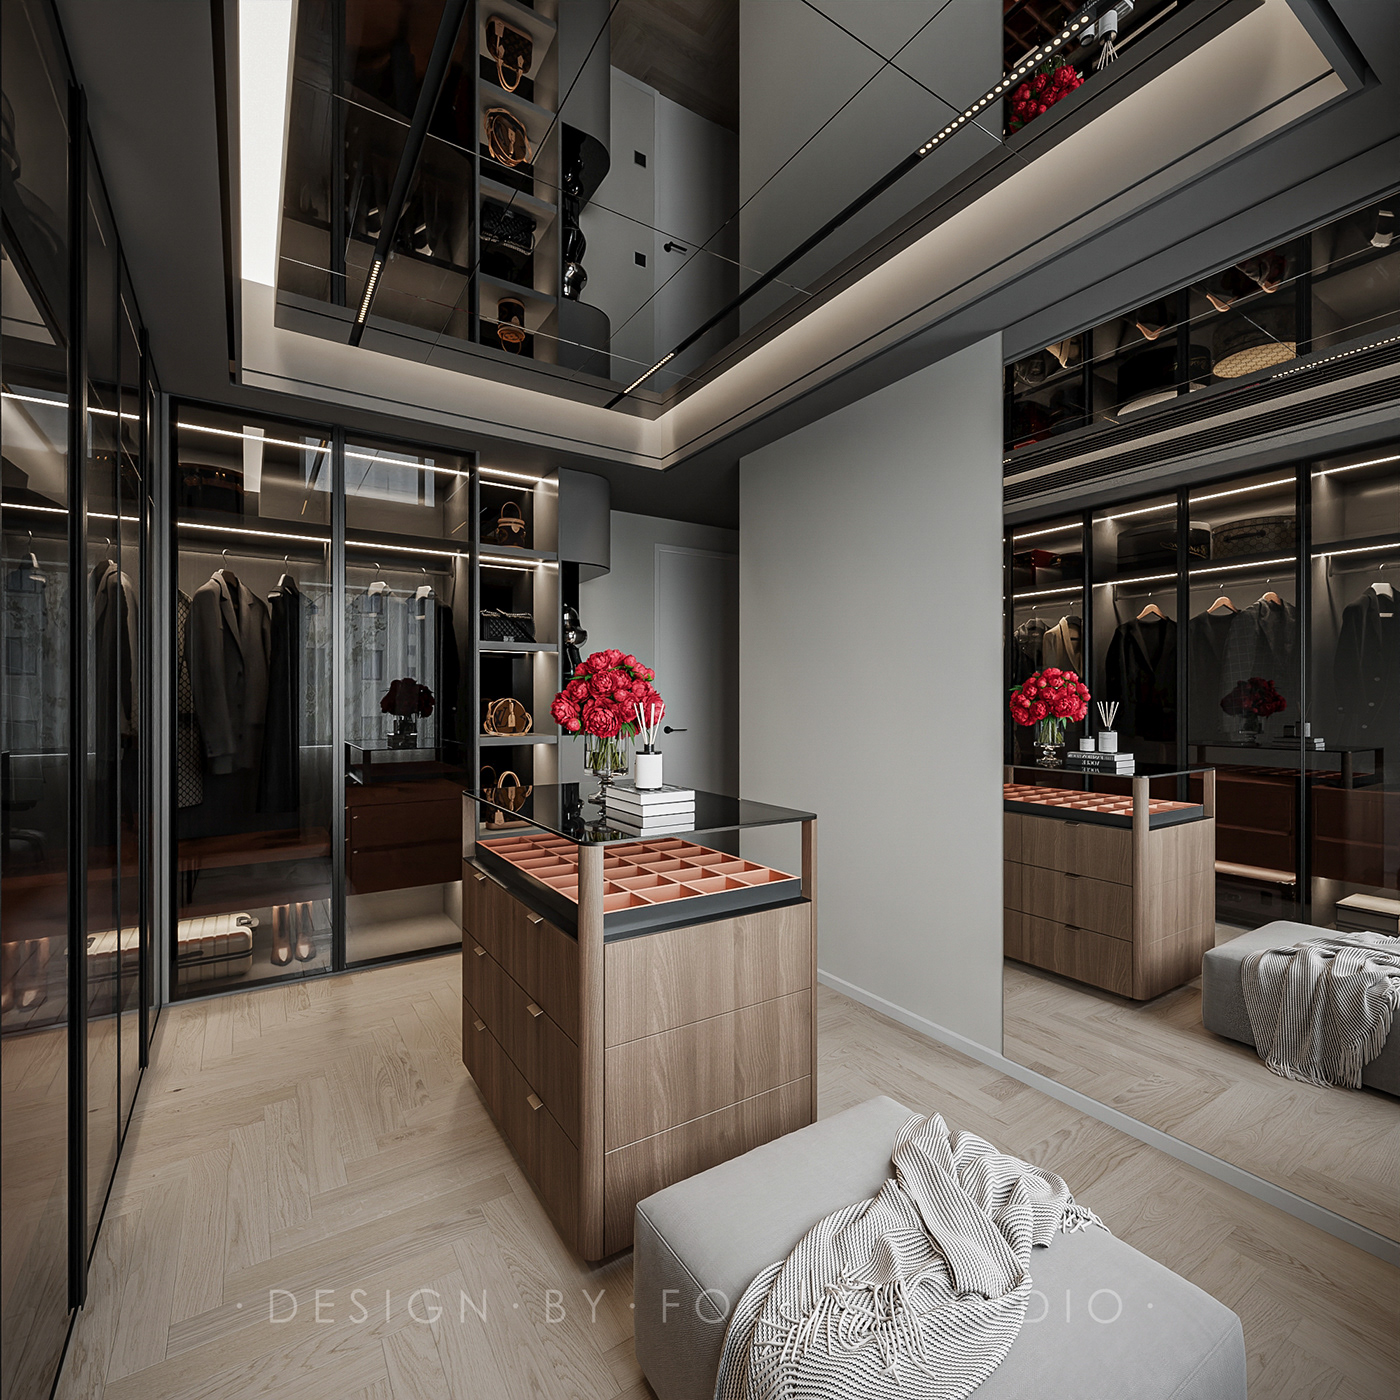 architecture bedroom design furniture kitchen living room modern Render visualization